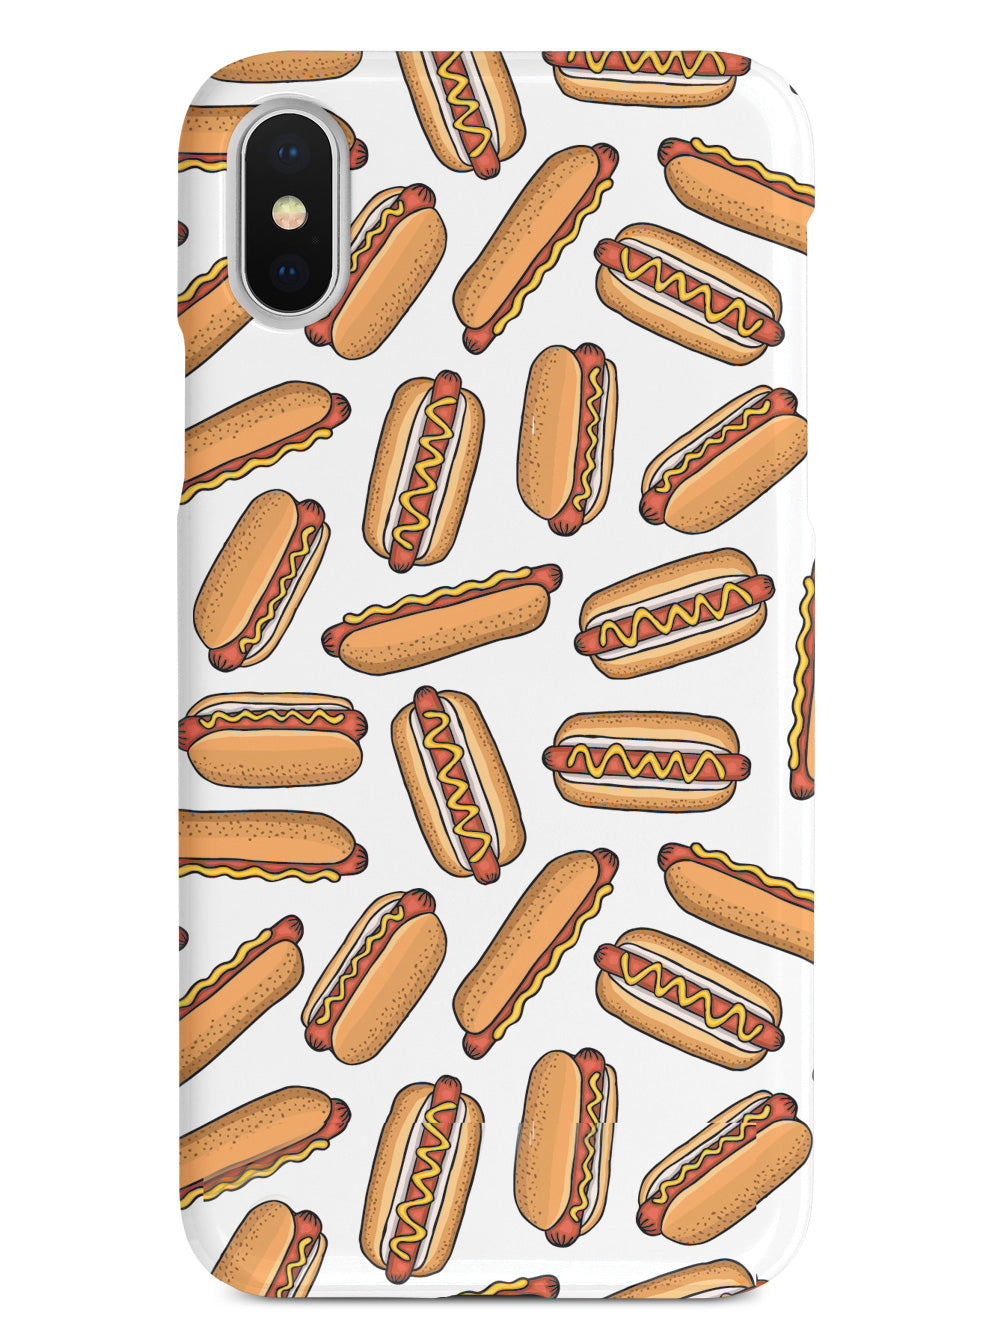 Hot Dog Pattern Case